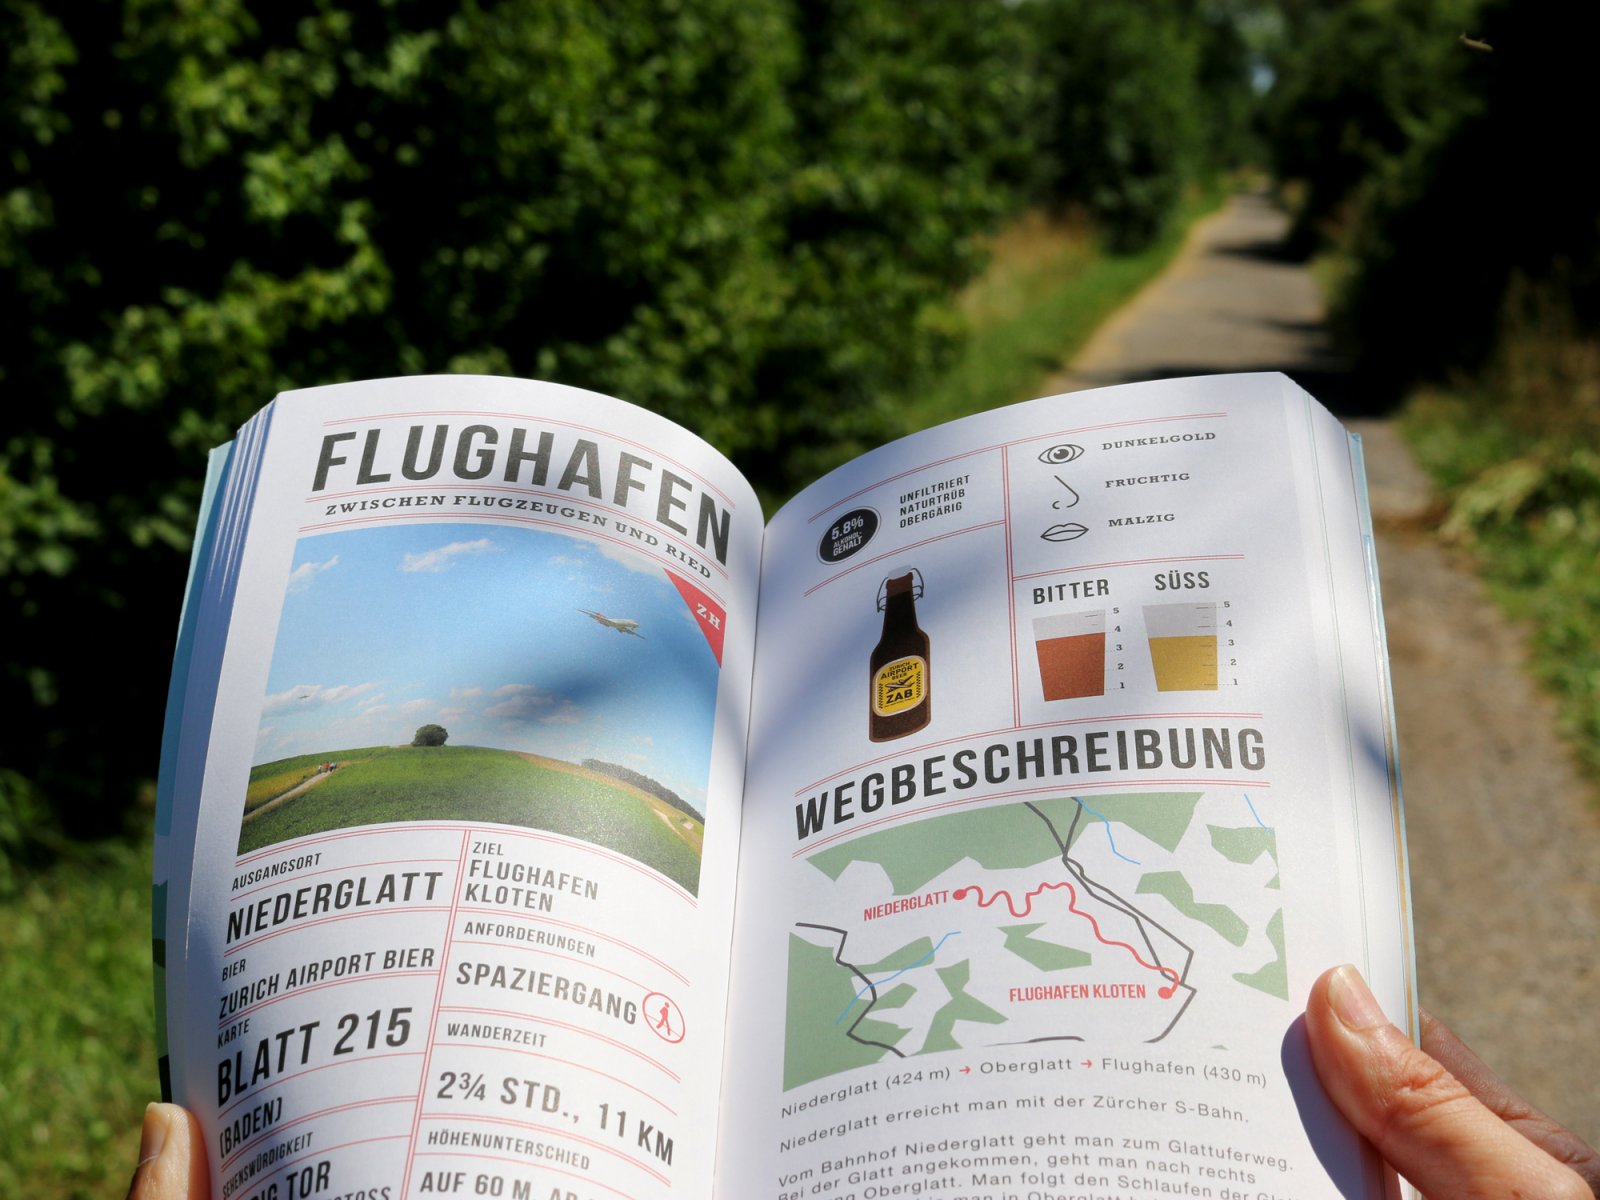 Bierwandern Schweiz - Beer Hiking Switzerland Book by Monika Saxer